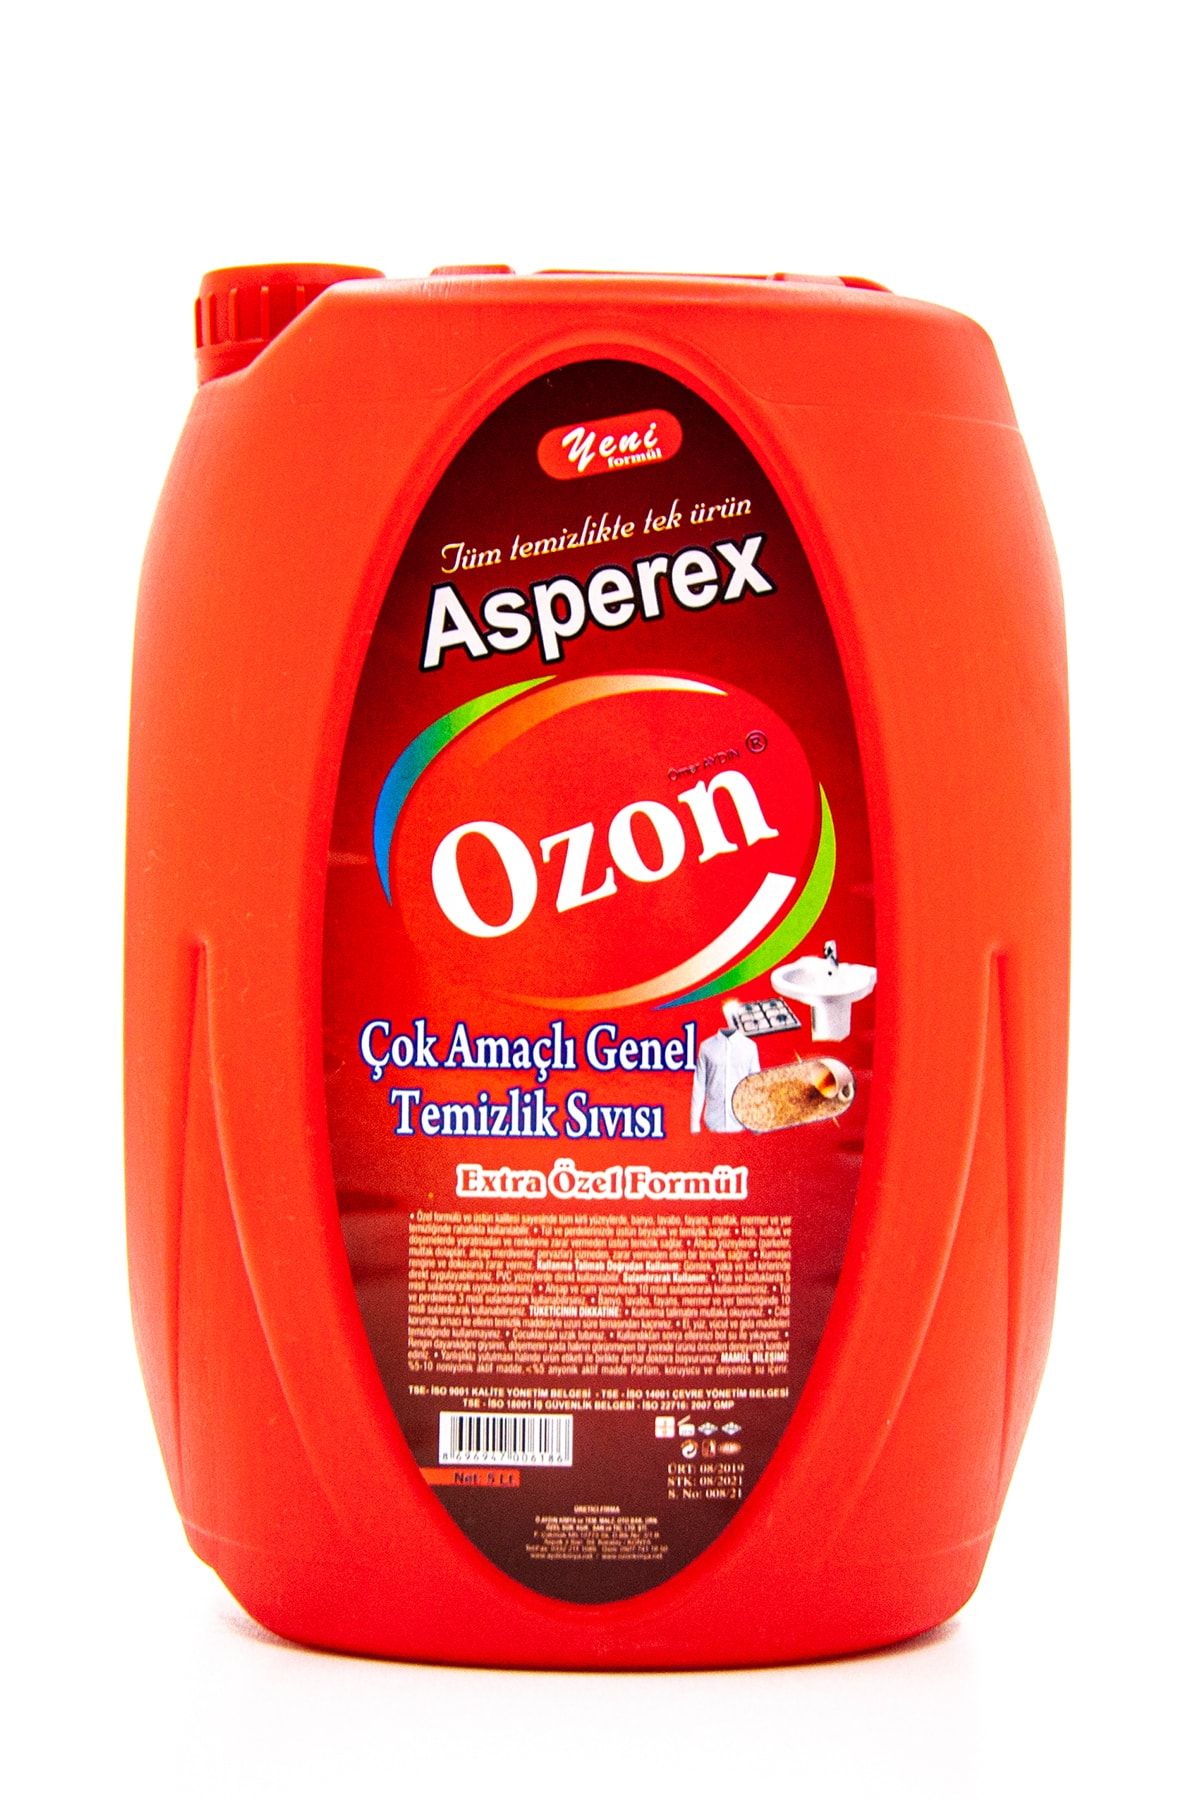 Ozon Asperex Çok Amaçlı Genel Temizlik Sıvısı 5l, Genel Temizlik